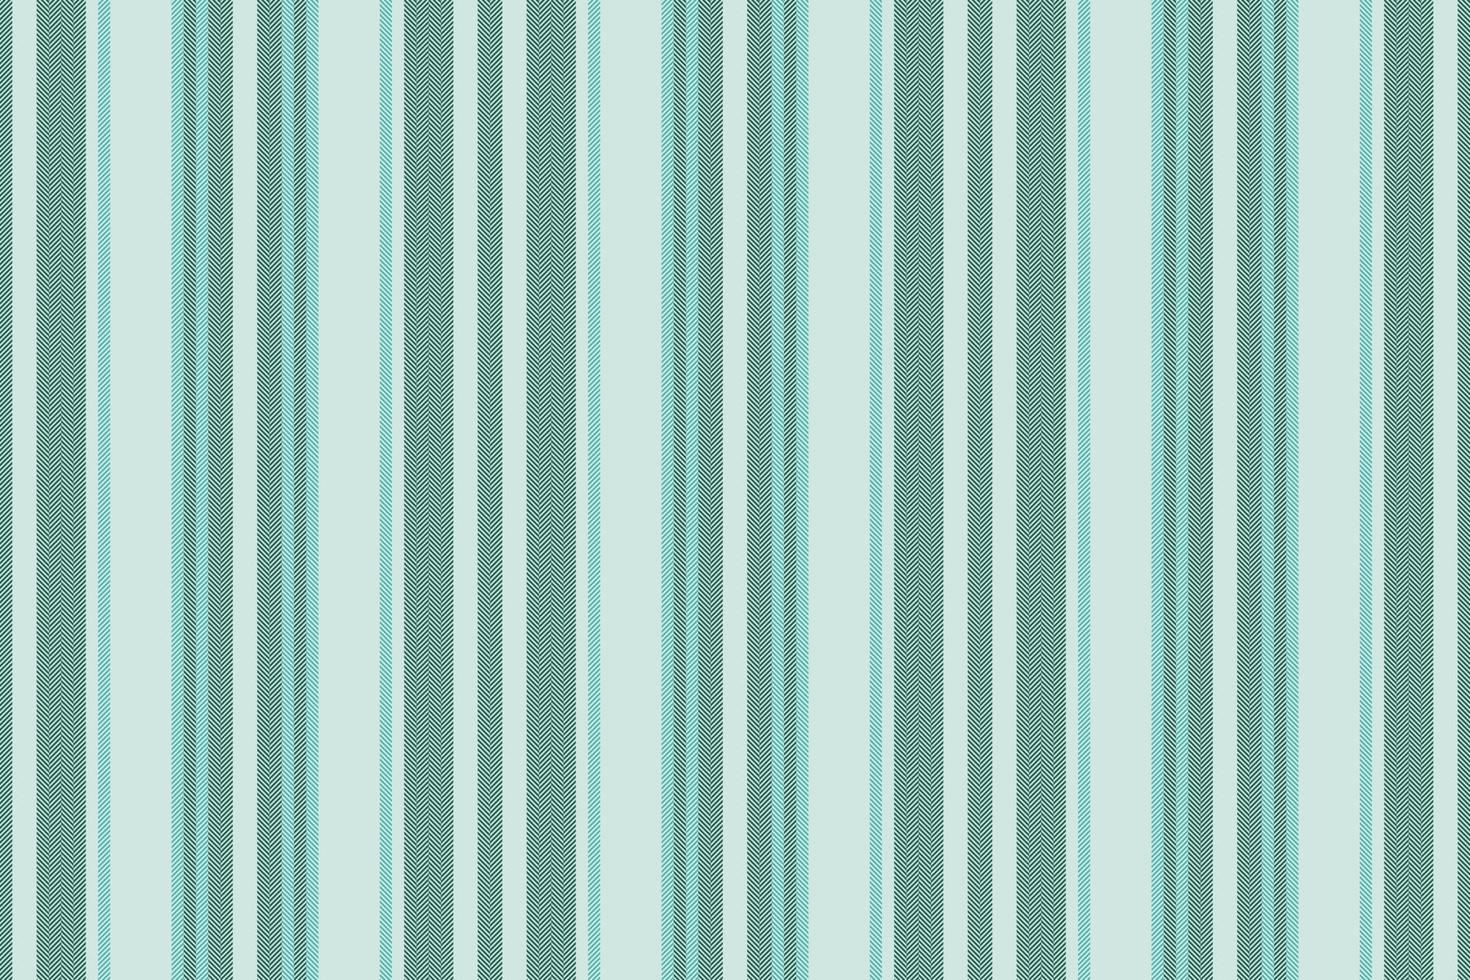 verticaal lijnen streep achtergrond. vector strepen patroon naadloos kleding stof textuur. meetkundig gestreept lijn abstract ontwerp.